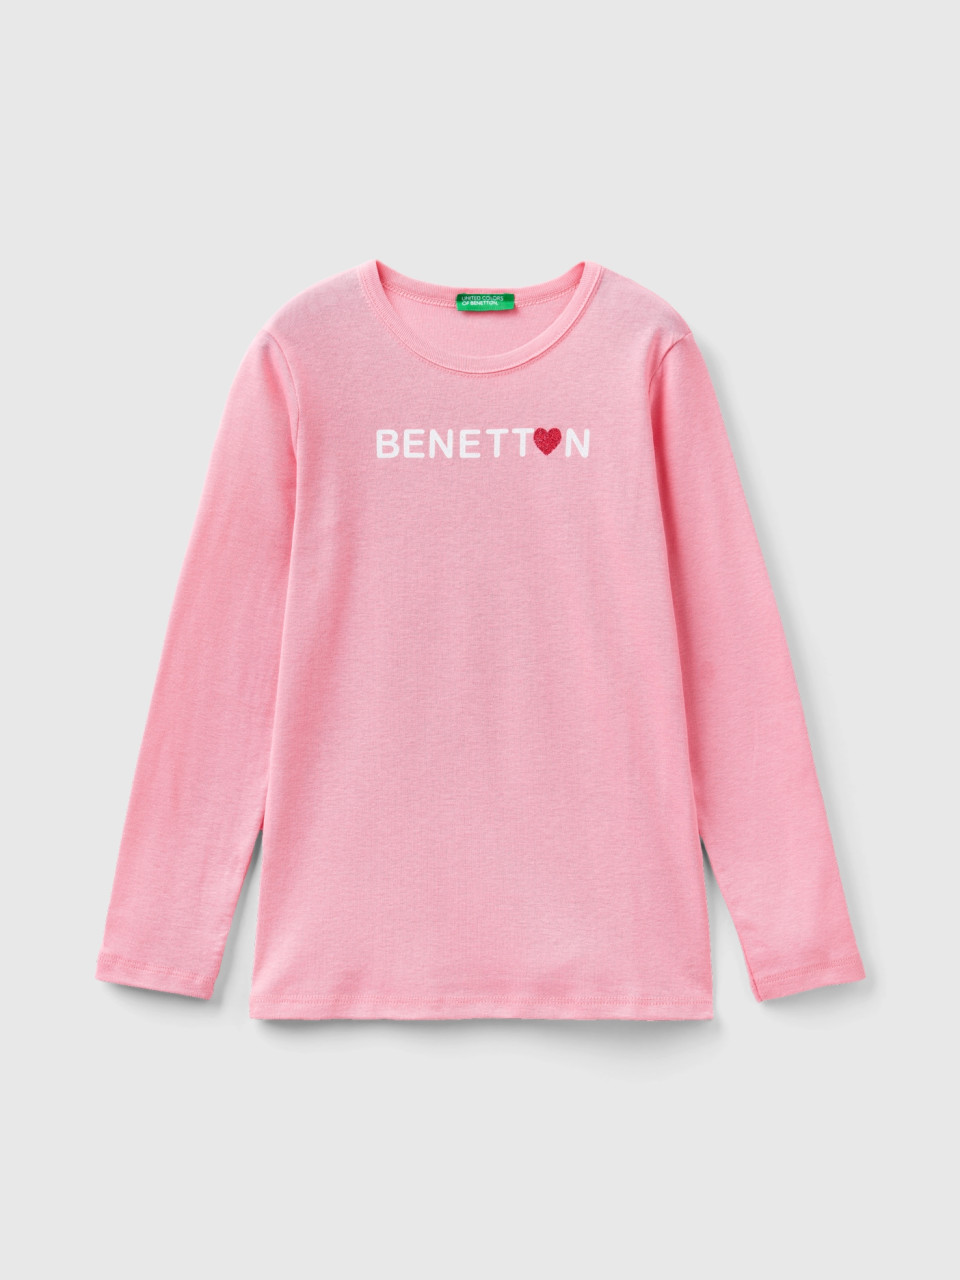 Benetton, Camiseta De Manga Larga Con Estampado De Glitter, Rosa, Niños